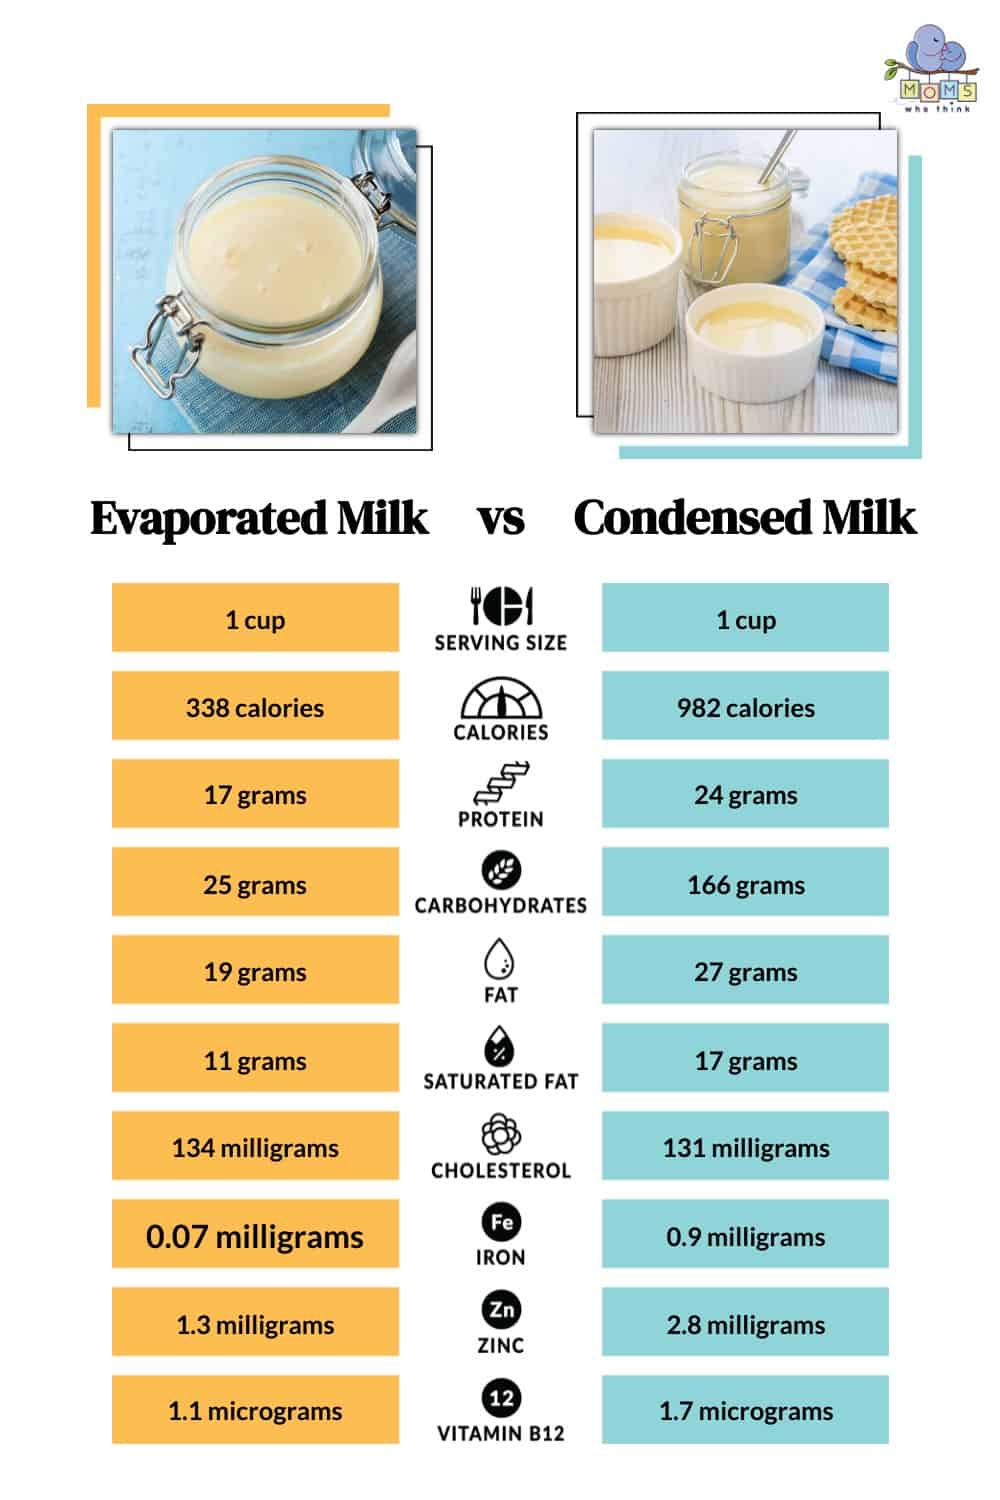 Evaporated Milk vs Condensed Milk Nutritional Facts